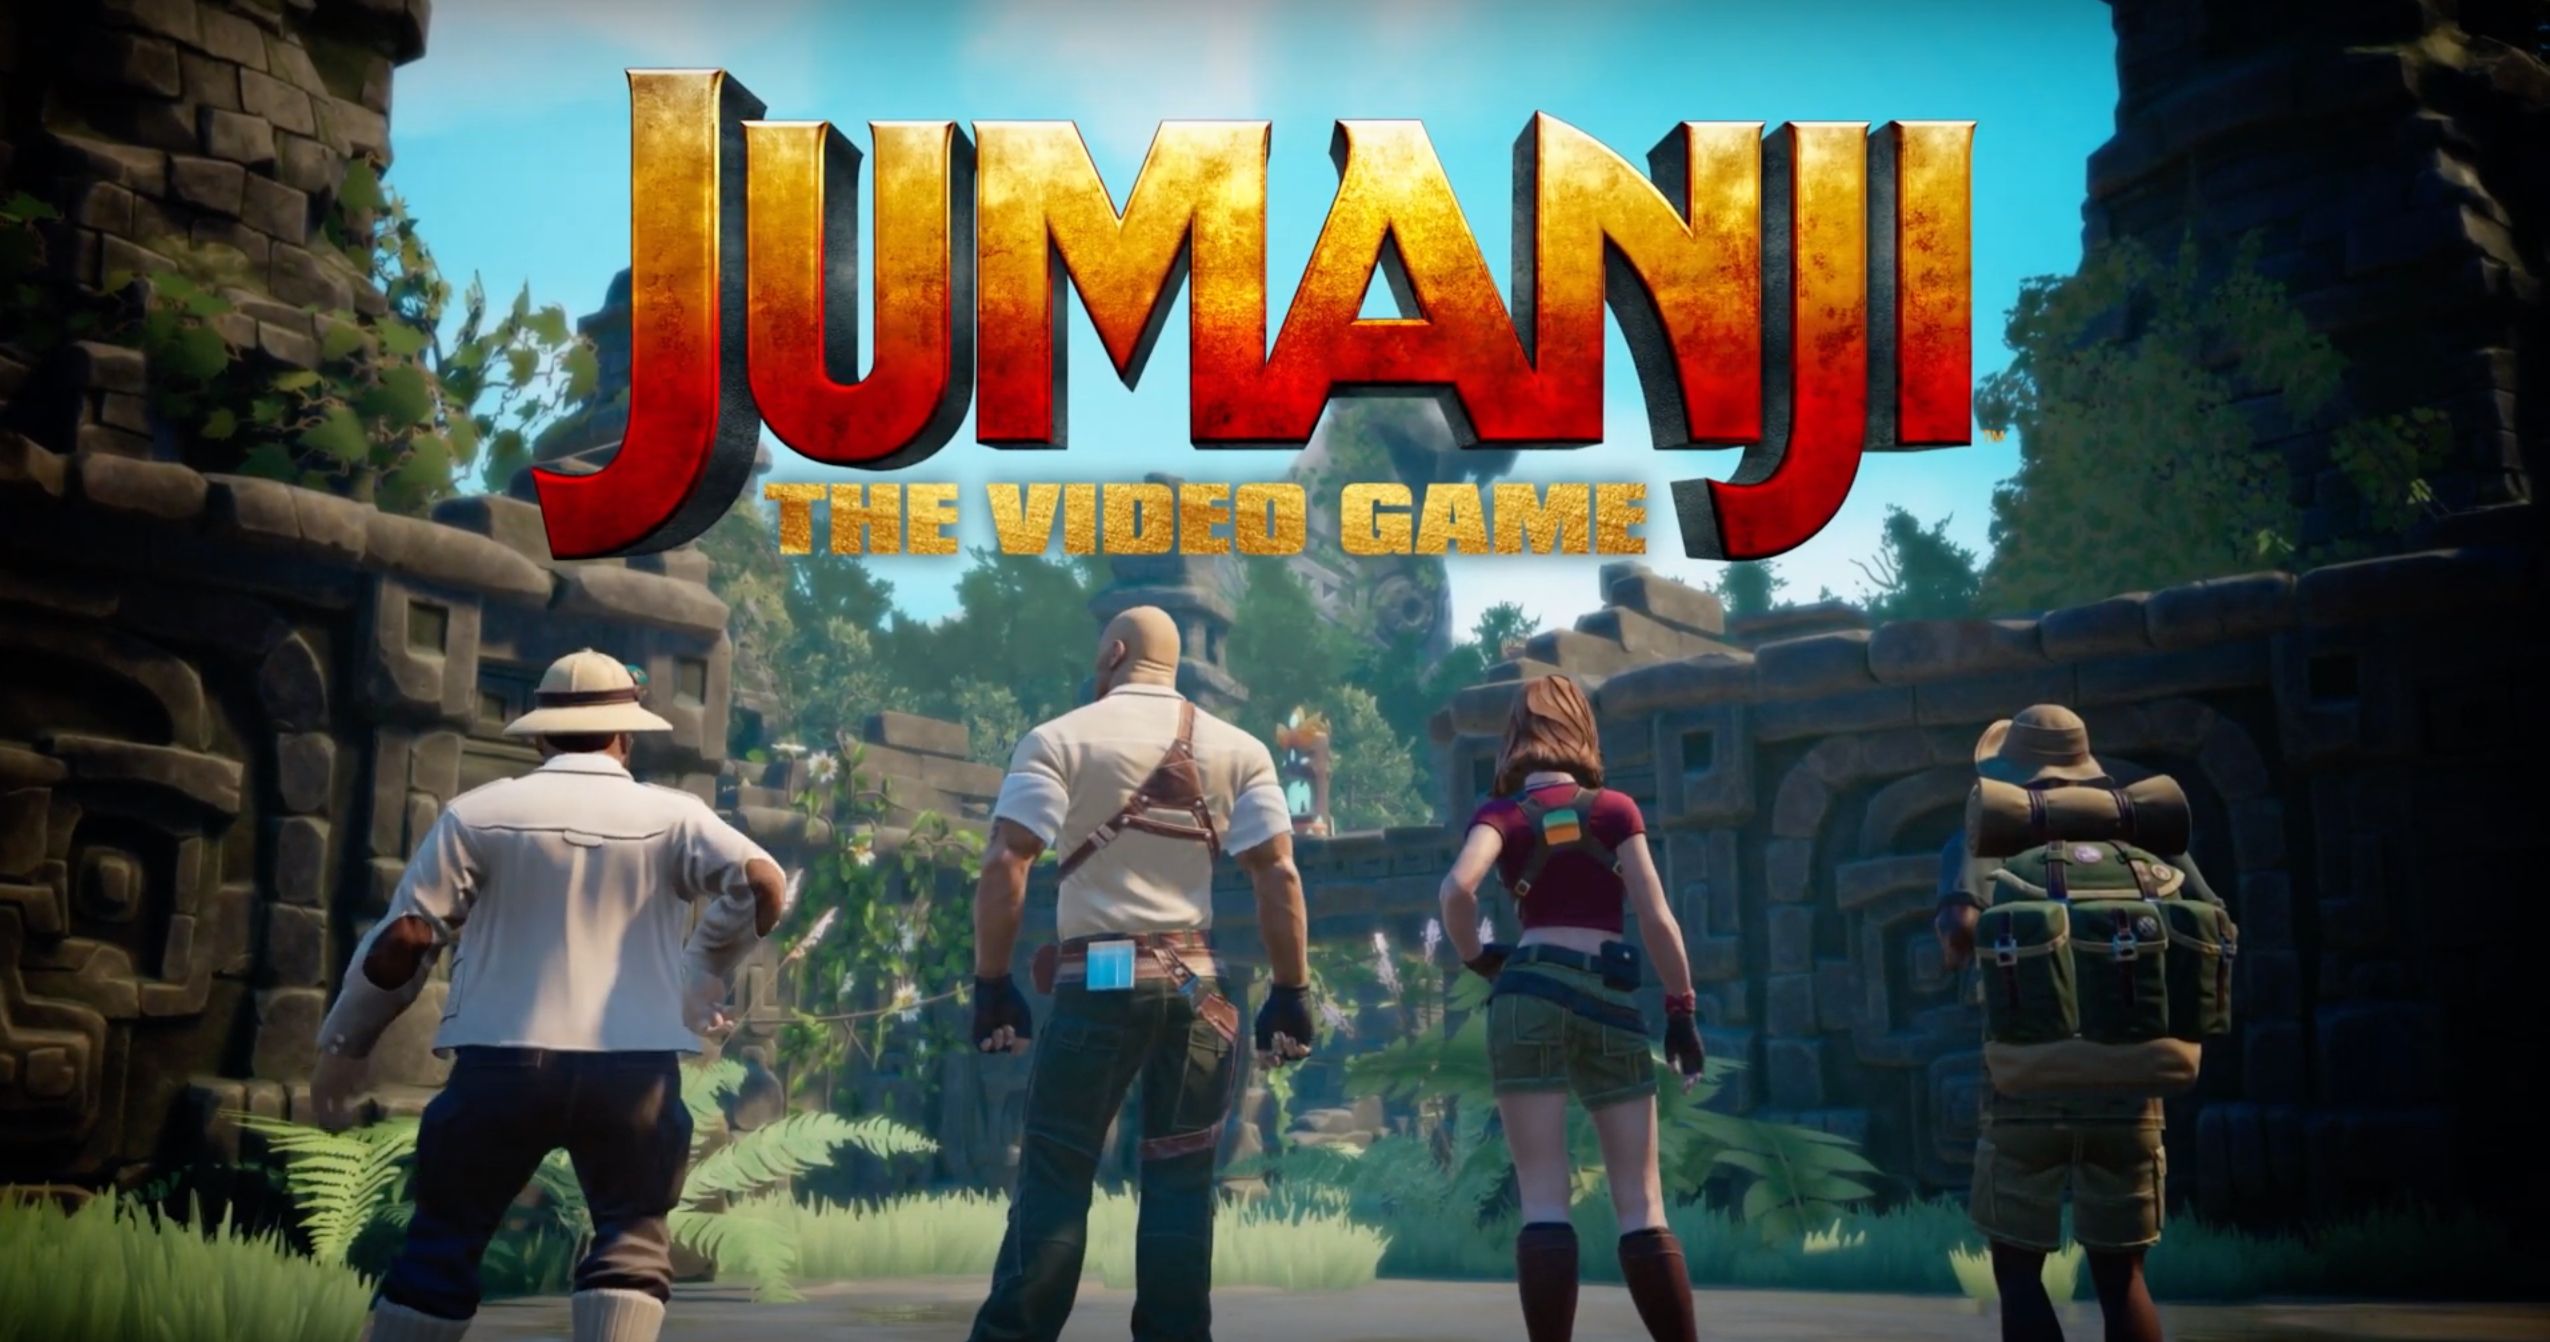 Jumanji Video Game Is Coming Ahead of Jumanji 3 This December